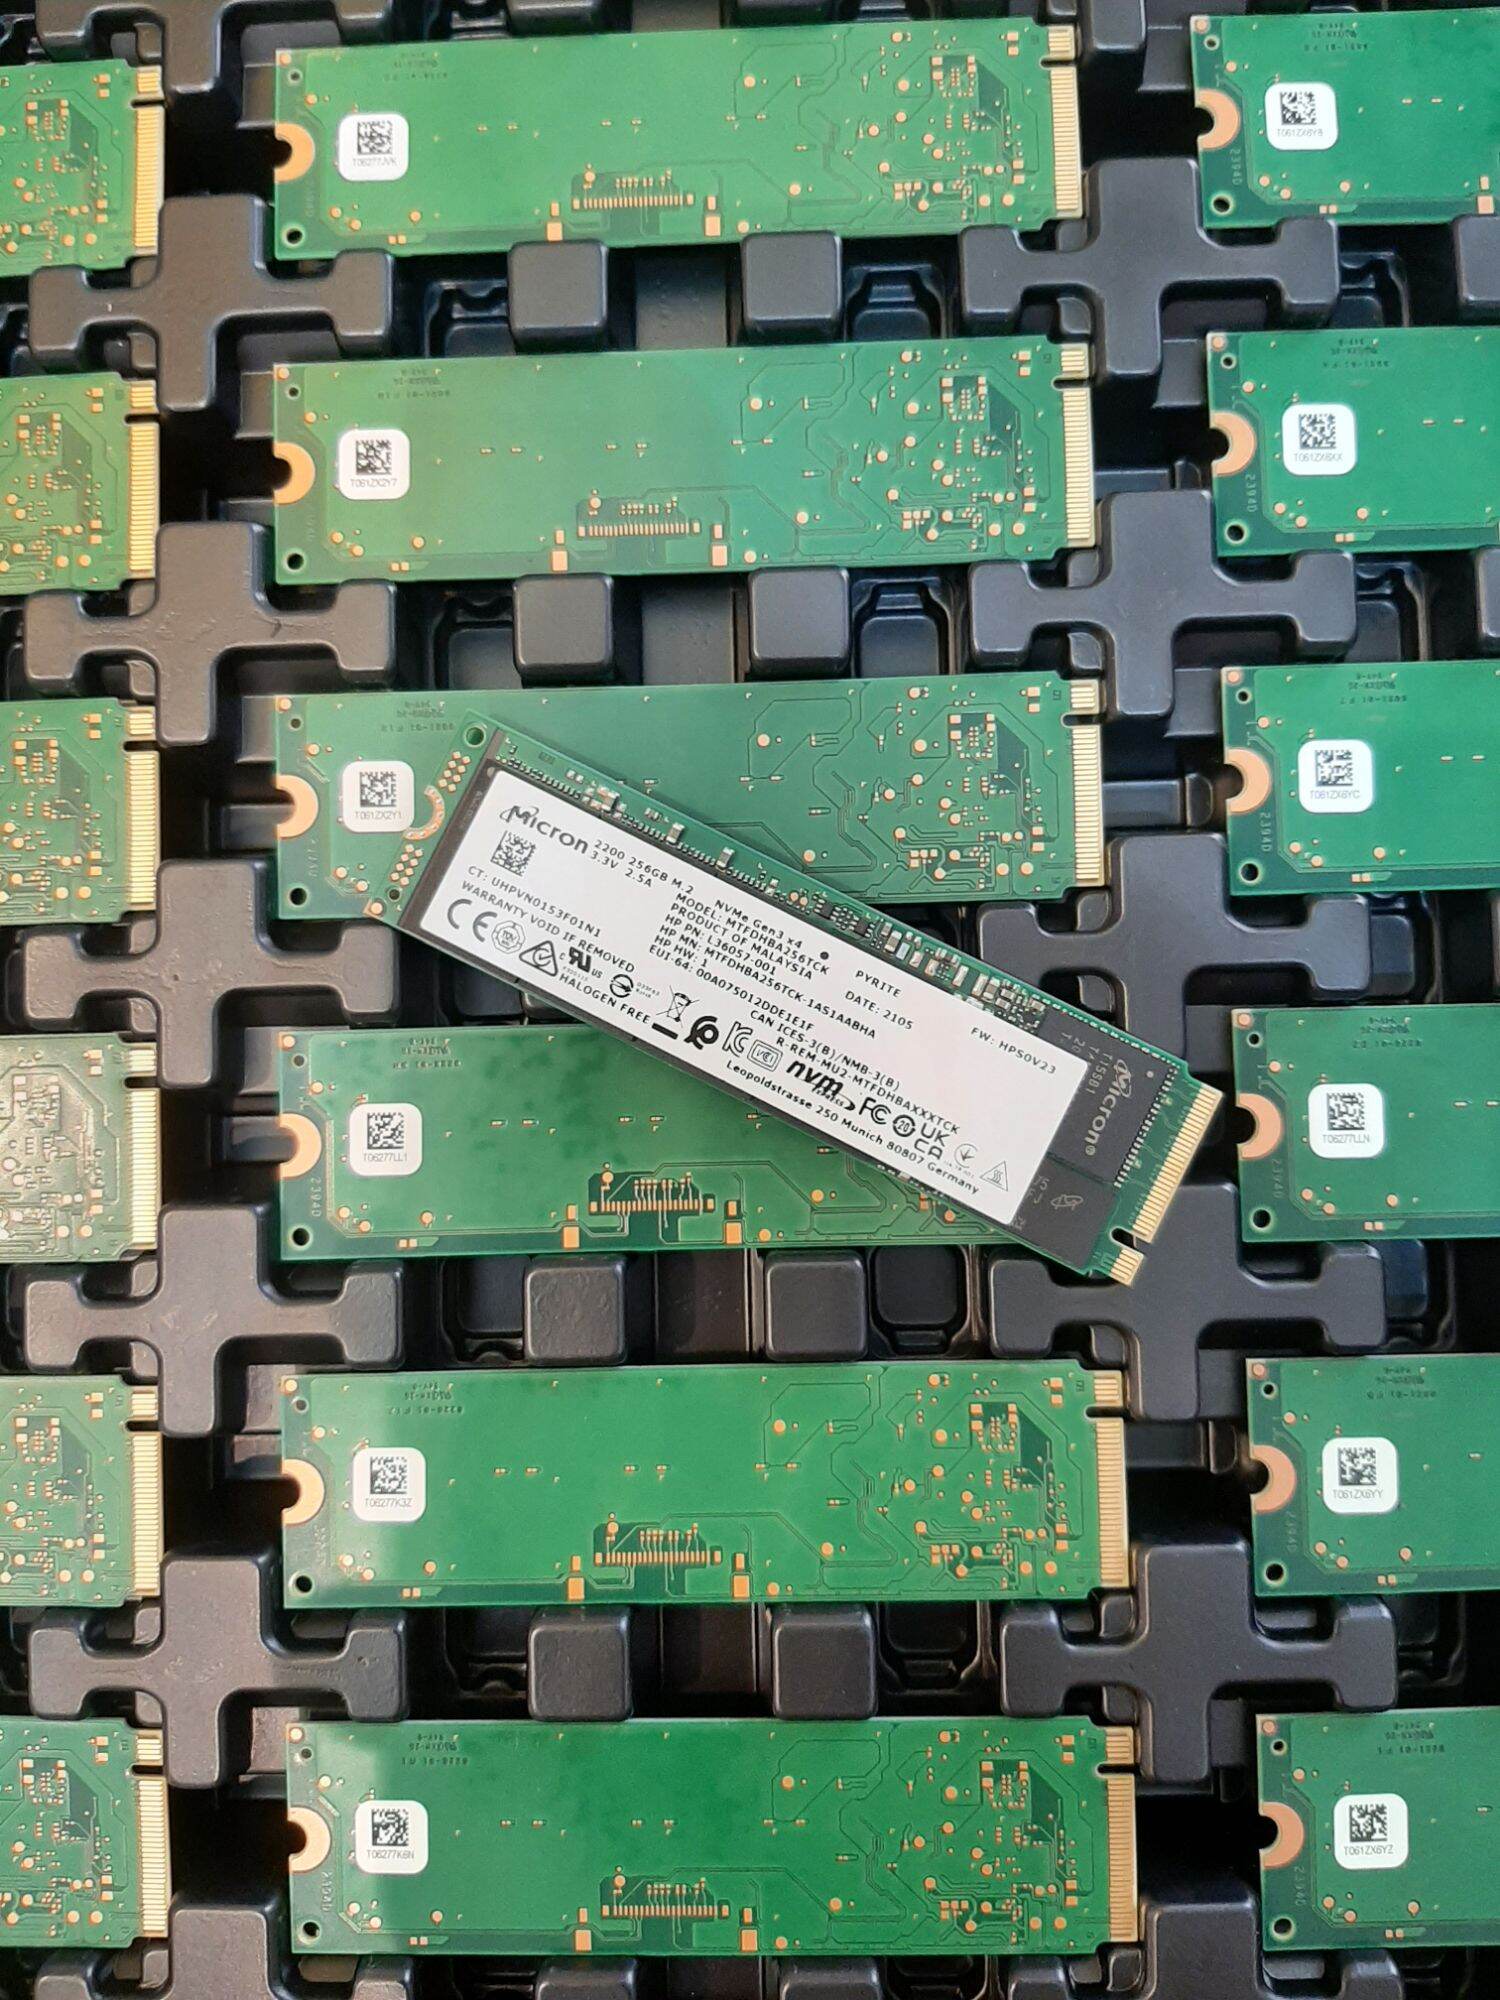 Ổ cứng SSD M2-PCIe Micron 256GB 2200 Gen3 x4 NVMe 2280 - MTFDHBA256TCK-1AS1AABHA - Shopbig1990 - bảo hành 36 tháng thumbnail